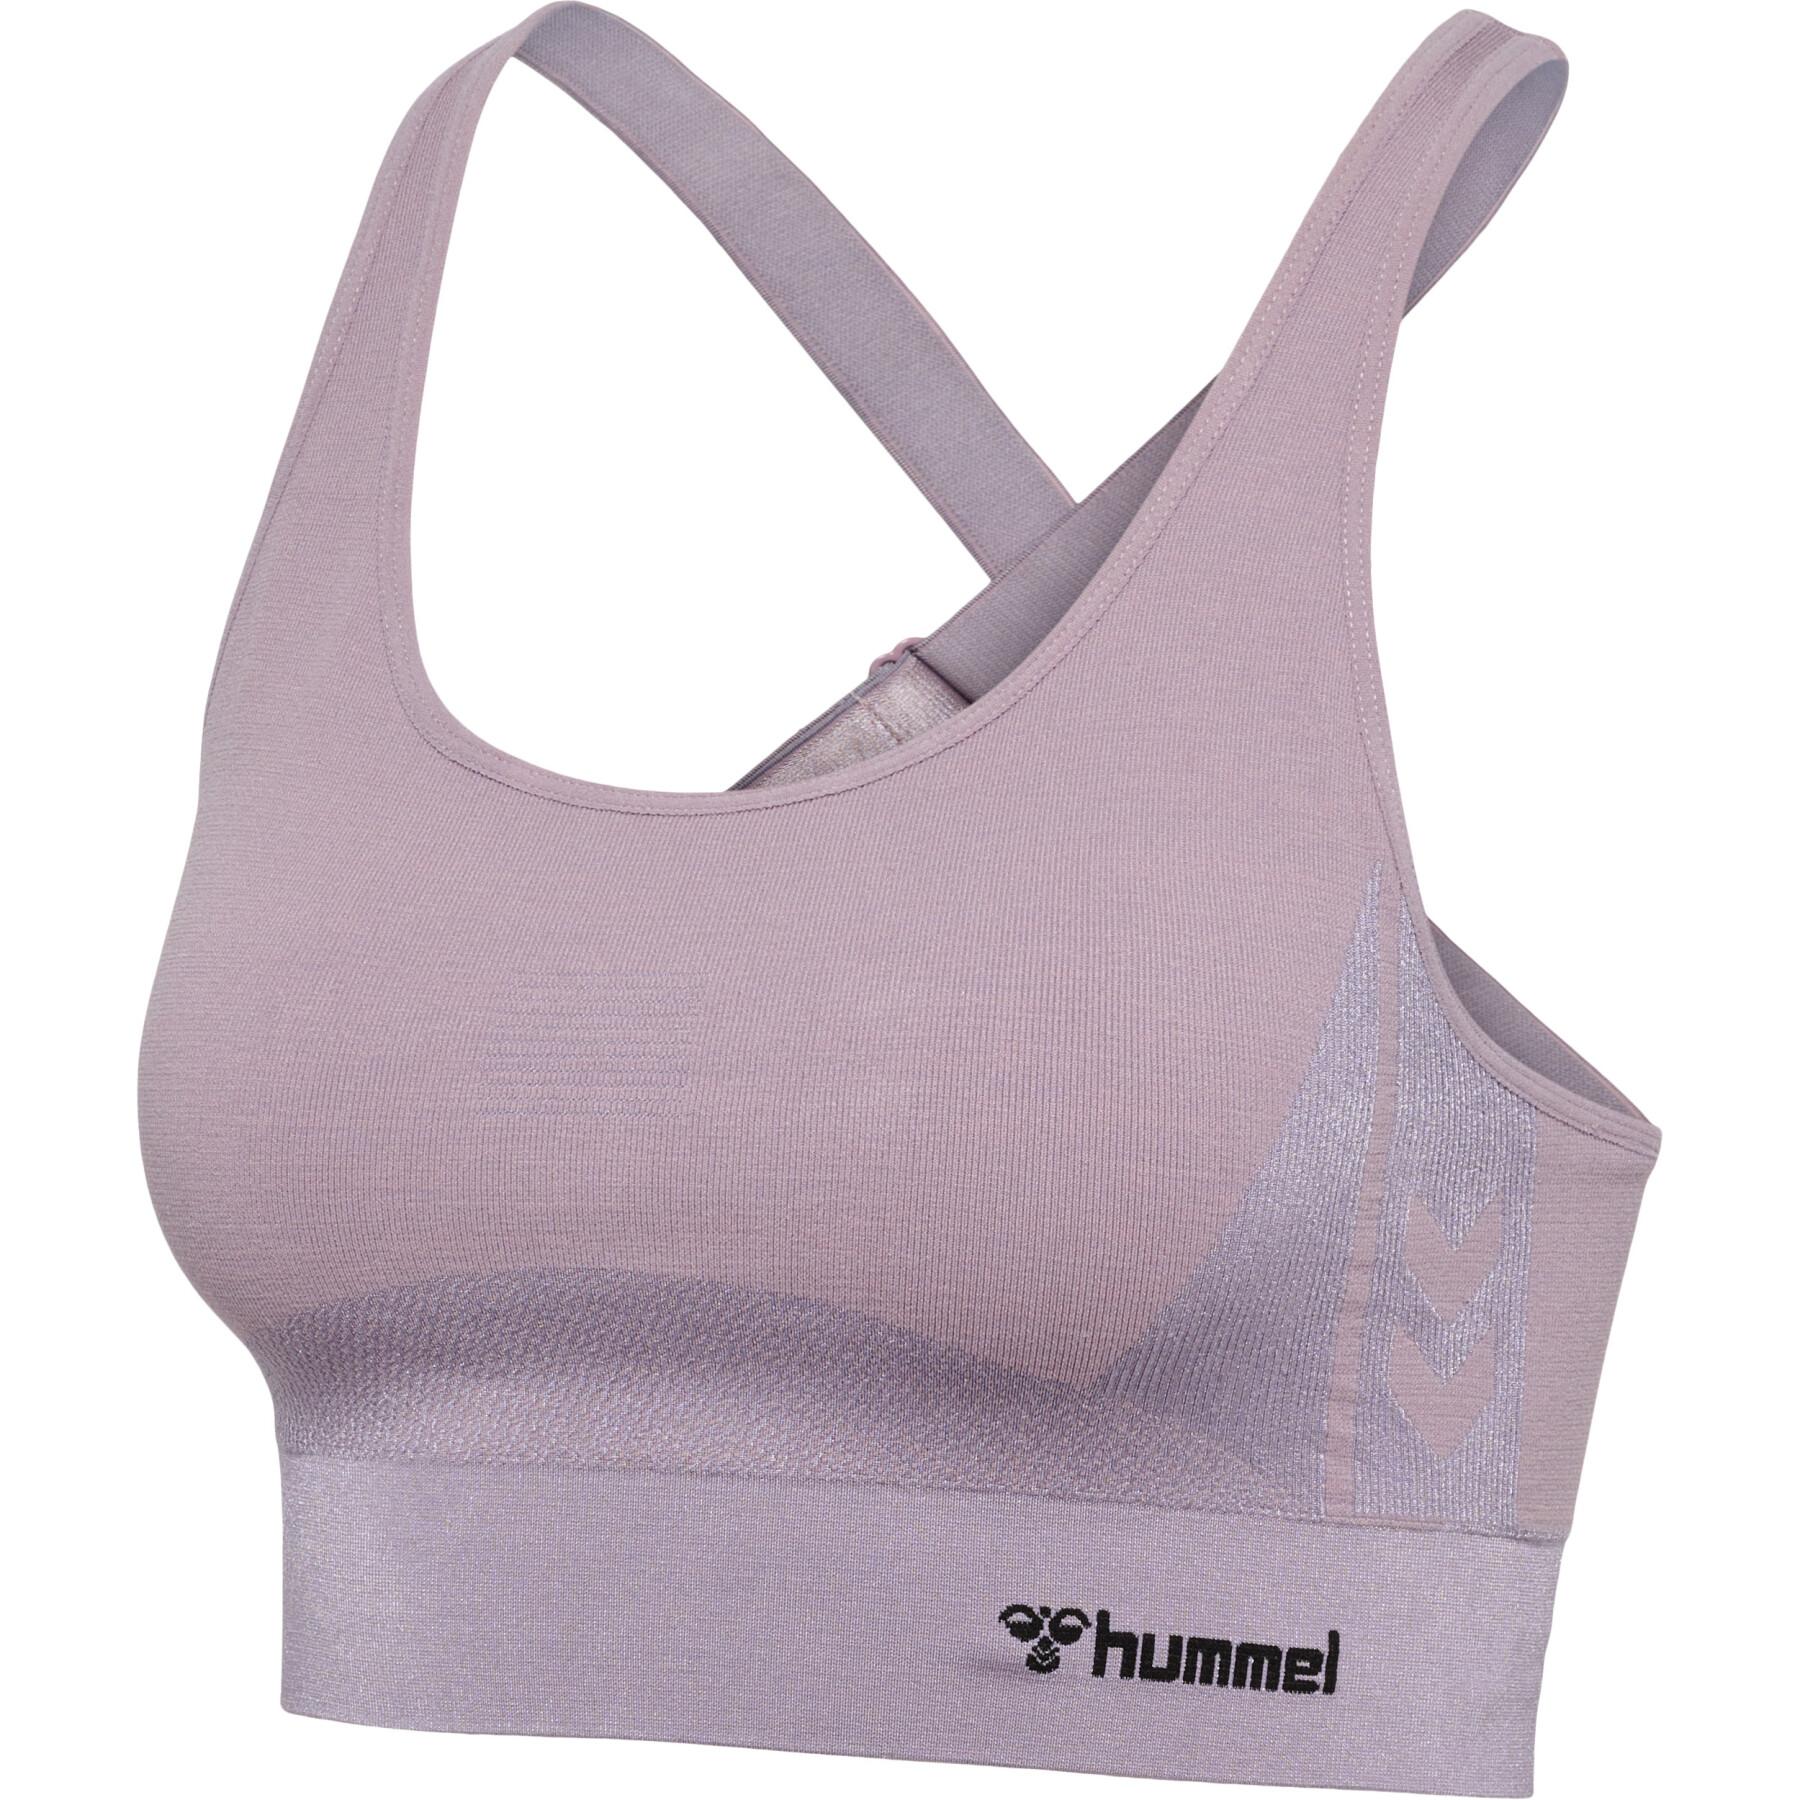 Seamless bra for women Hummel Clea